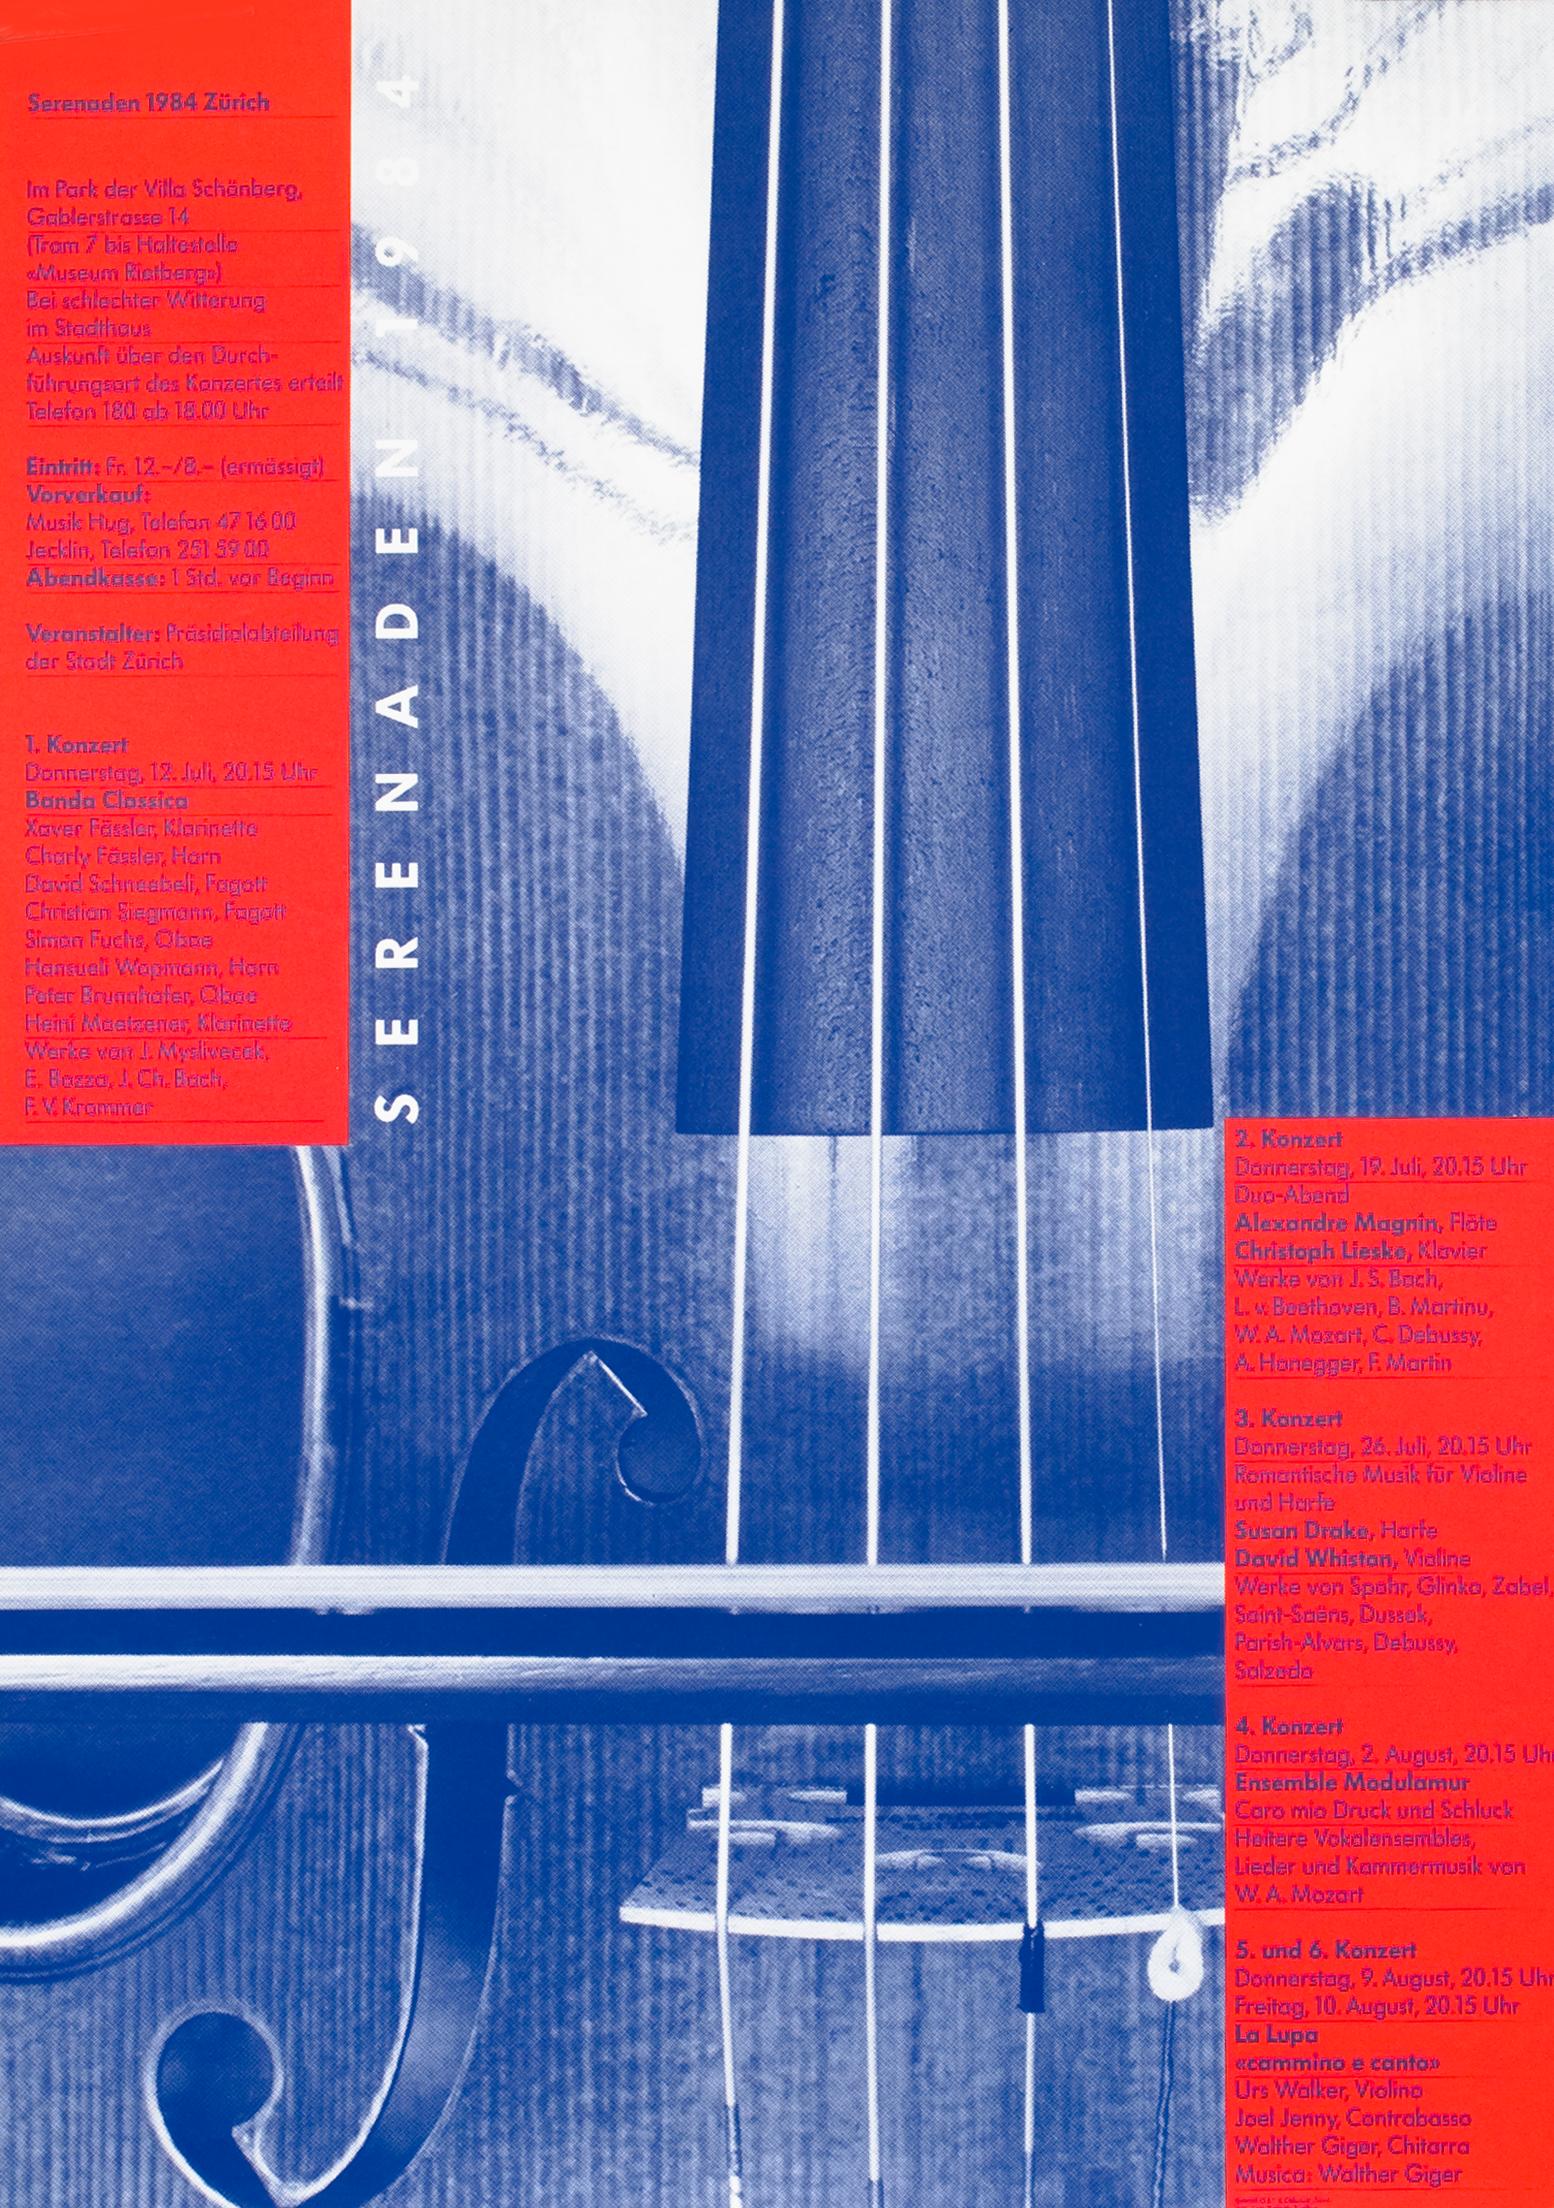 Odermatt & Tissi Abstract Print - "Serenaden 1984" Swiss Post Modern Music Festival Violin Original Vintage Poster